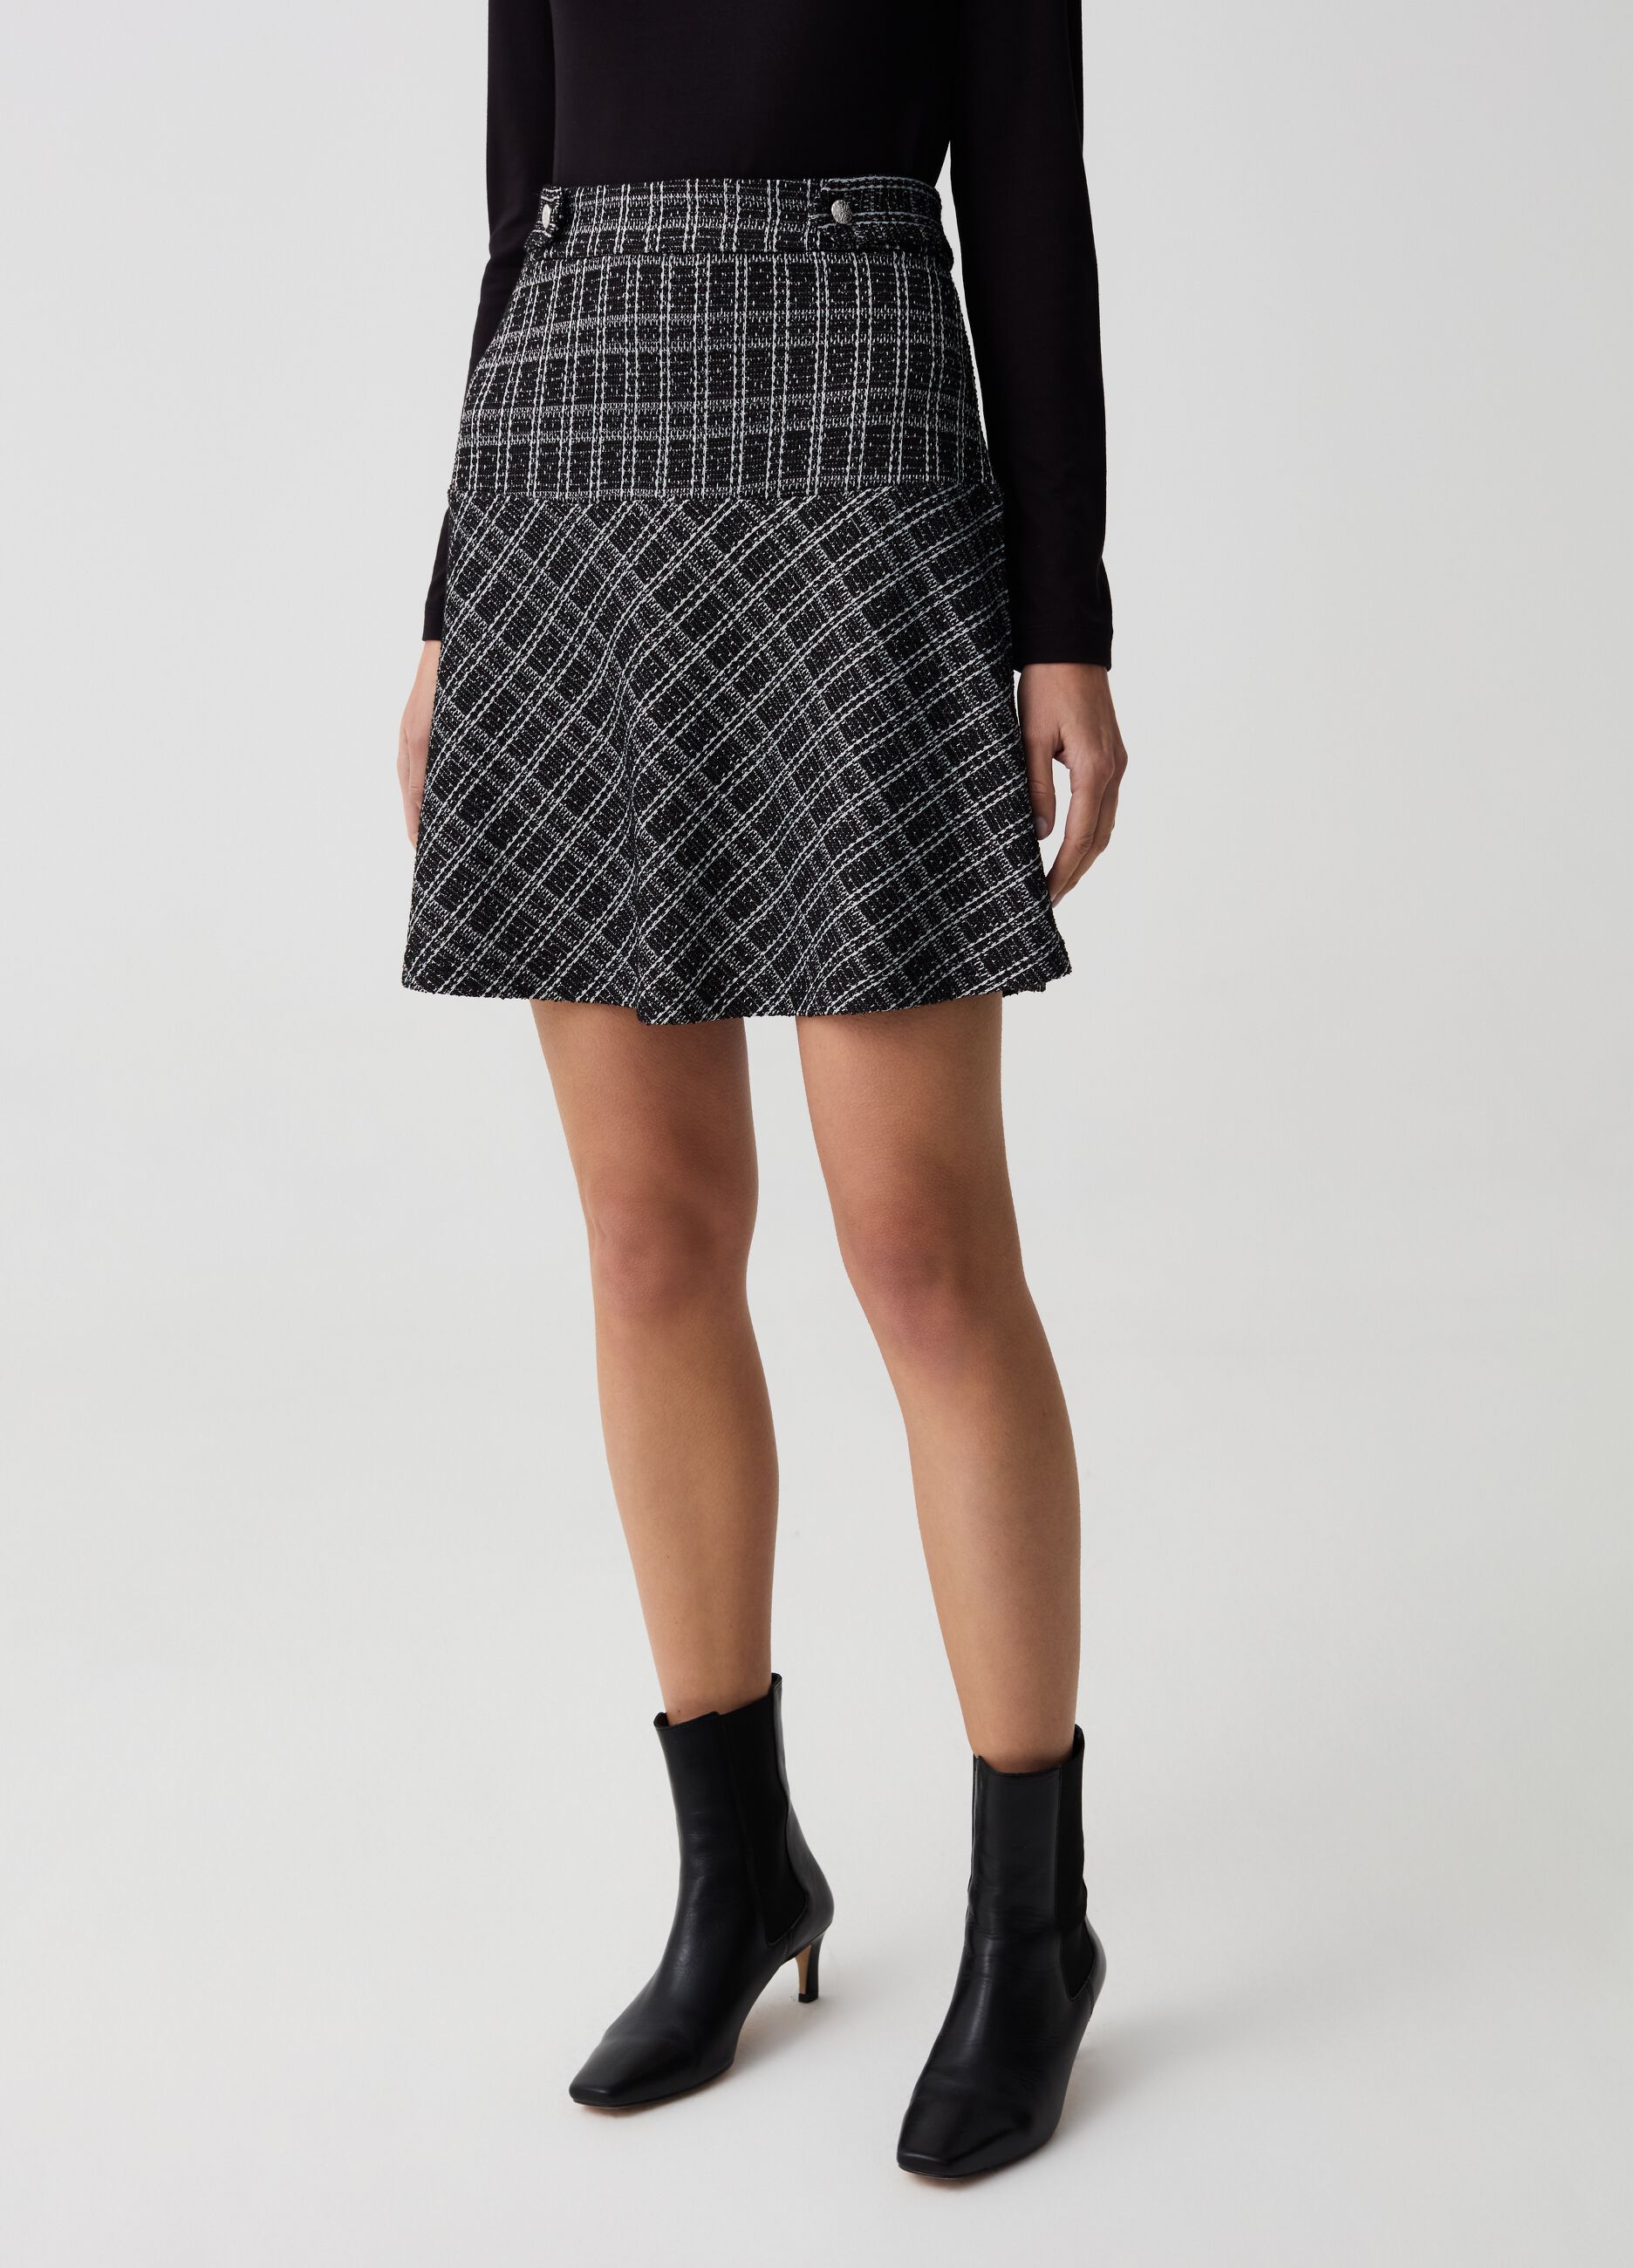 Short full skirt in patterned lurex